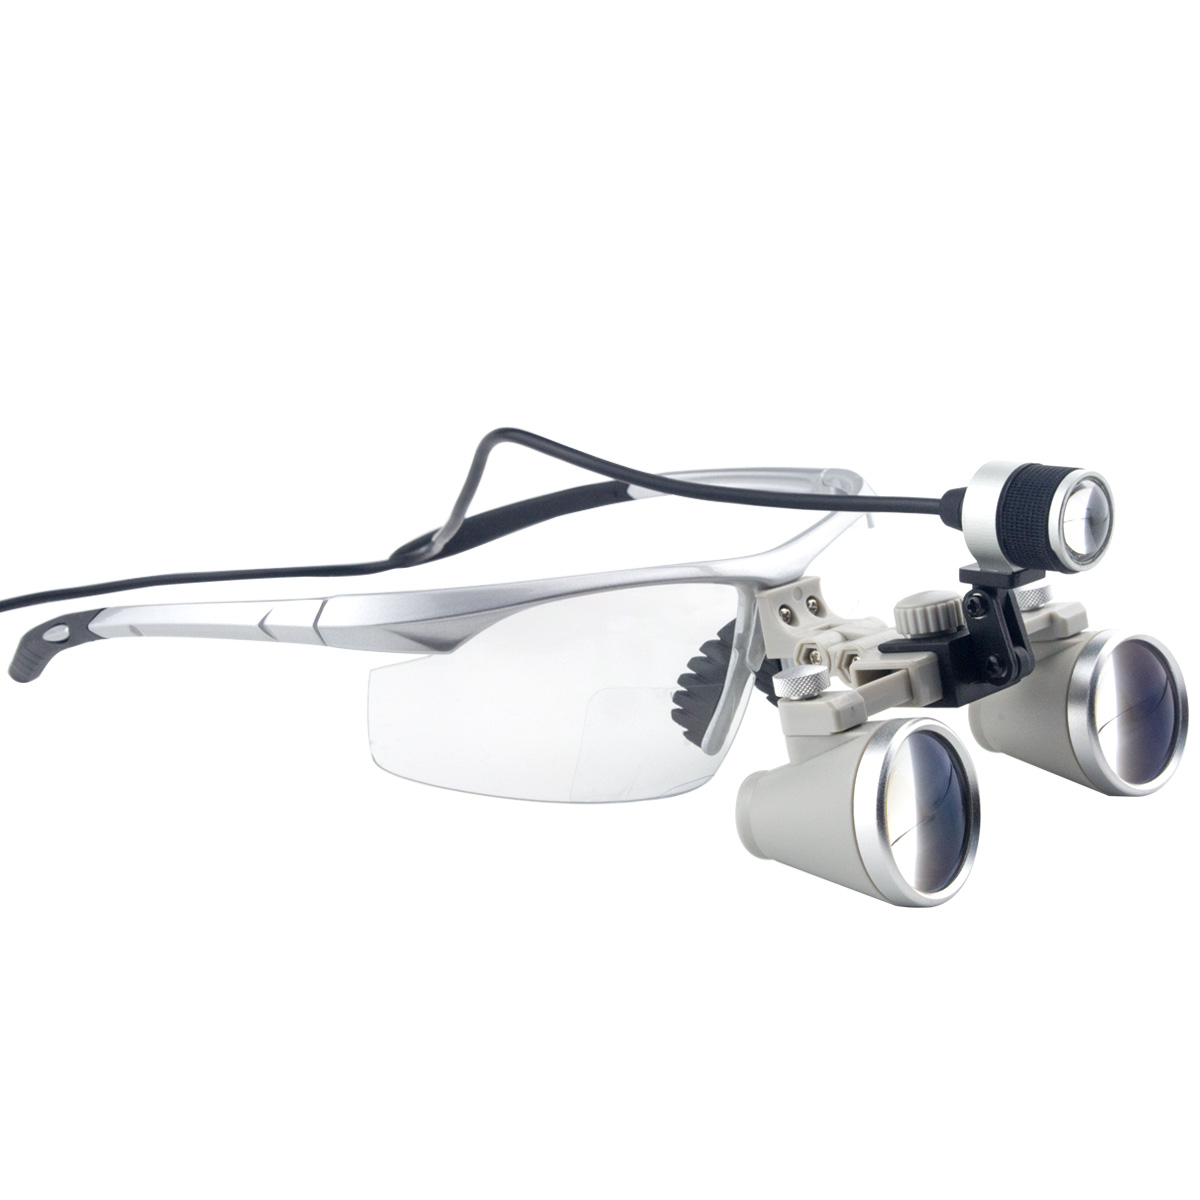 3.5х Увеличение Профессиональный луп с серебряной BP Sports Рамой и конной LED головного света для стоматологии, хирургический, ювелир, или хобби | Регулируемая зрачка Модель # CH350AXSL